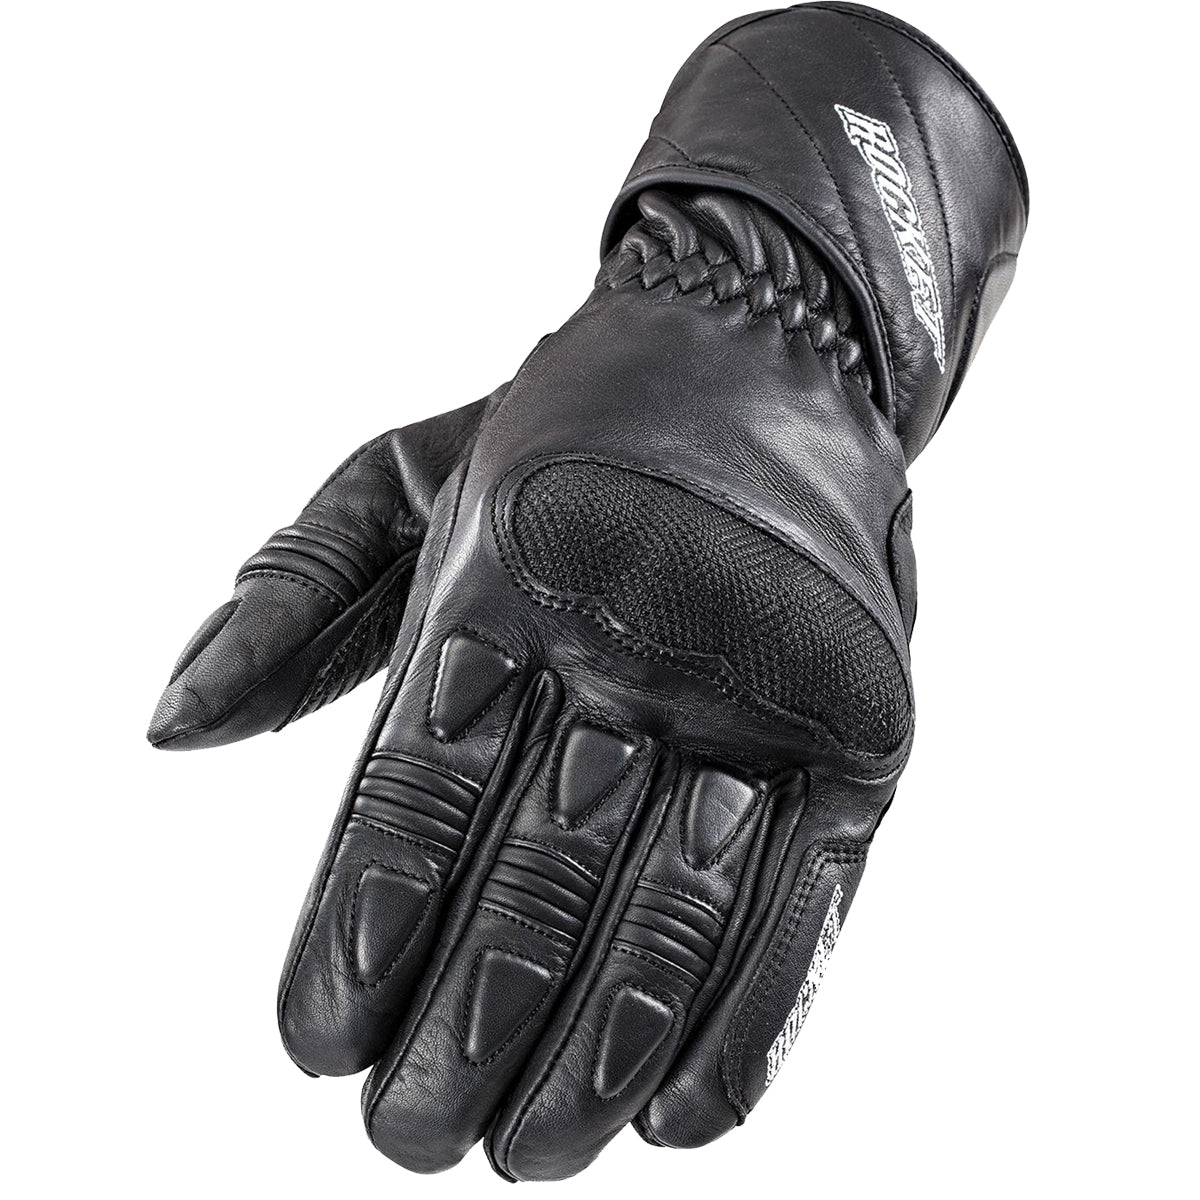 Joe Rocket Pro Men's Street Gloves Brand New-1520